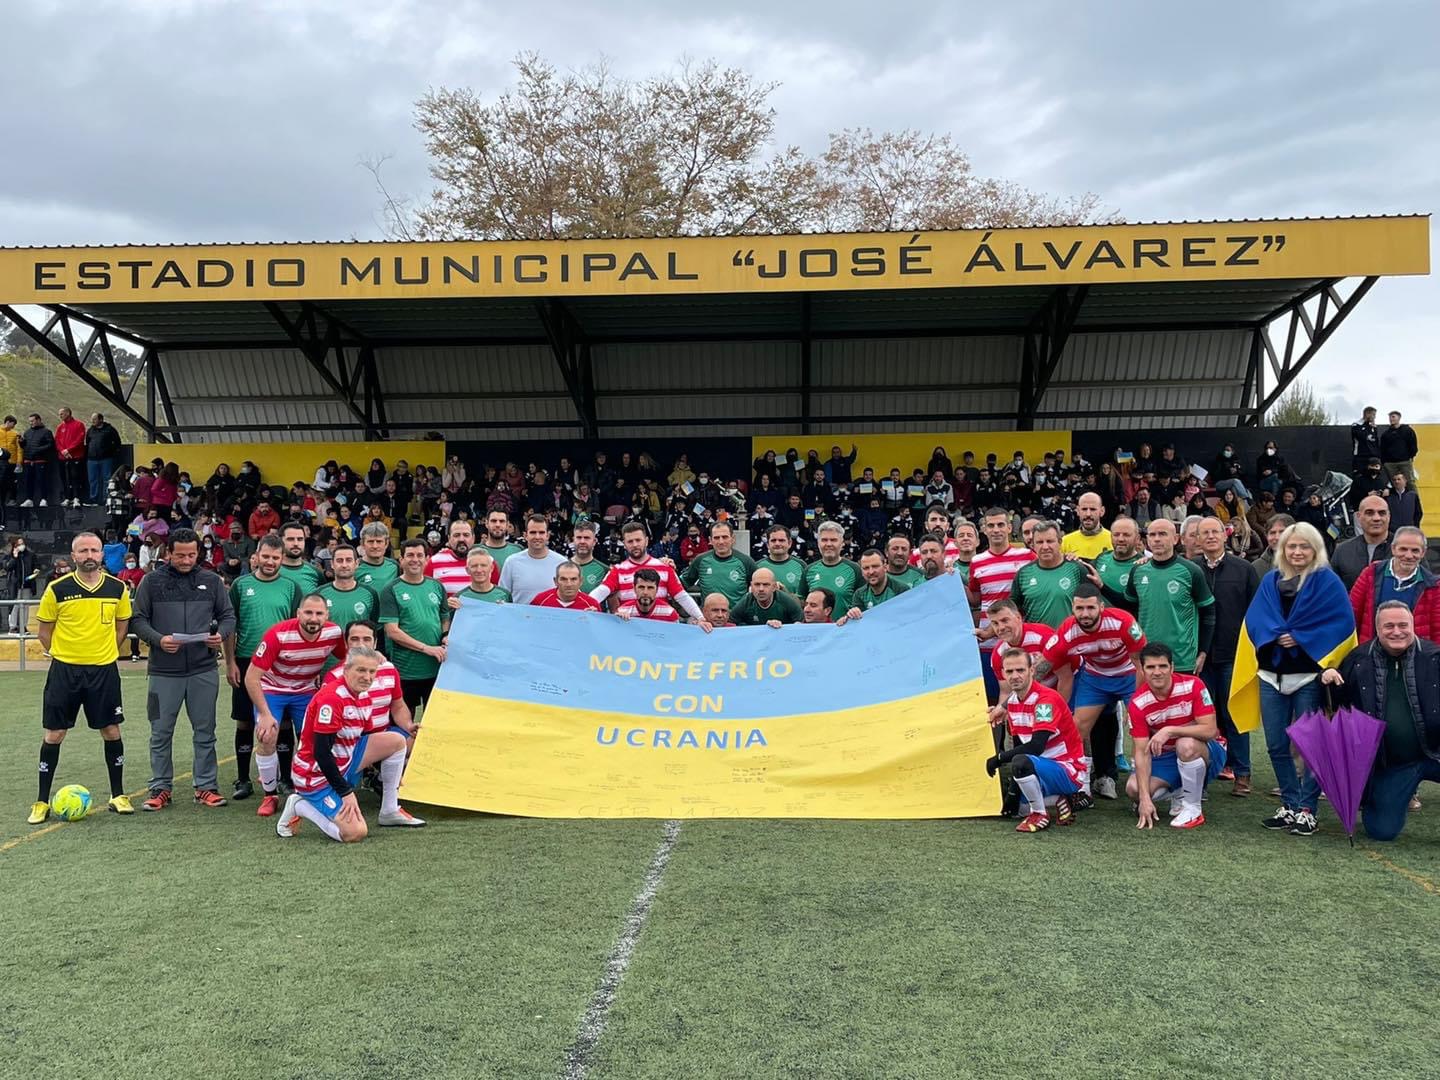 Montefrío recauda casi 2.000 euros para los refugiados de Ucrania gracias a un partido de fútbol solidario